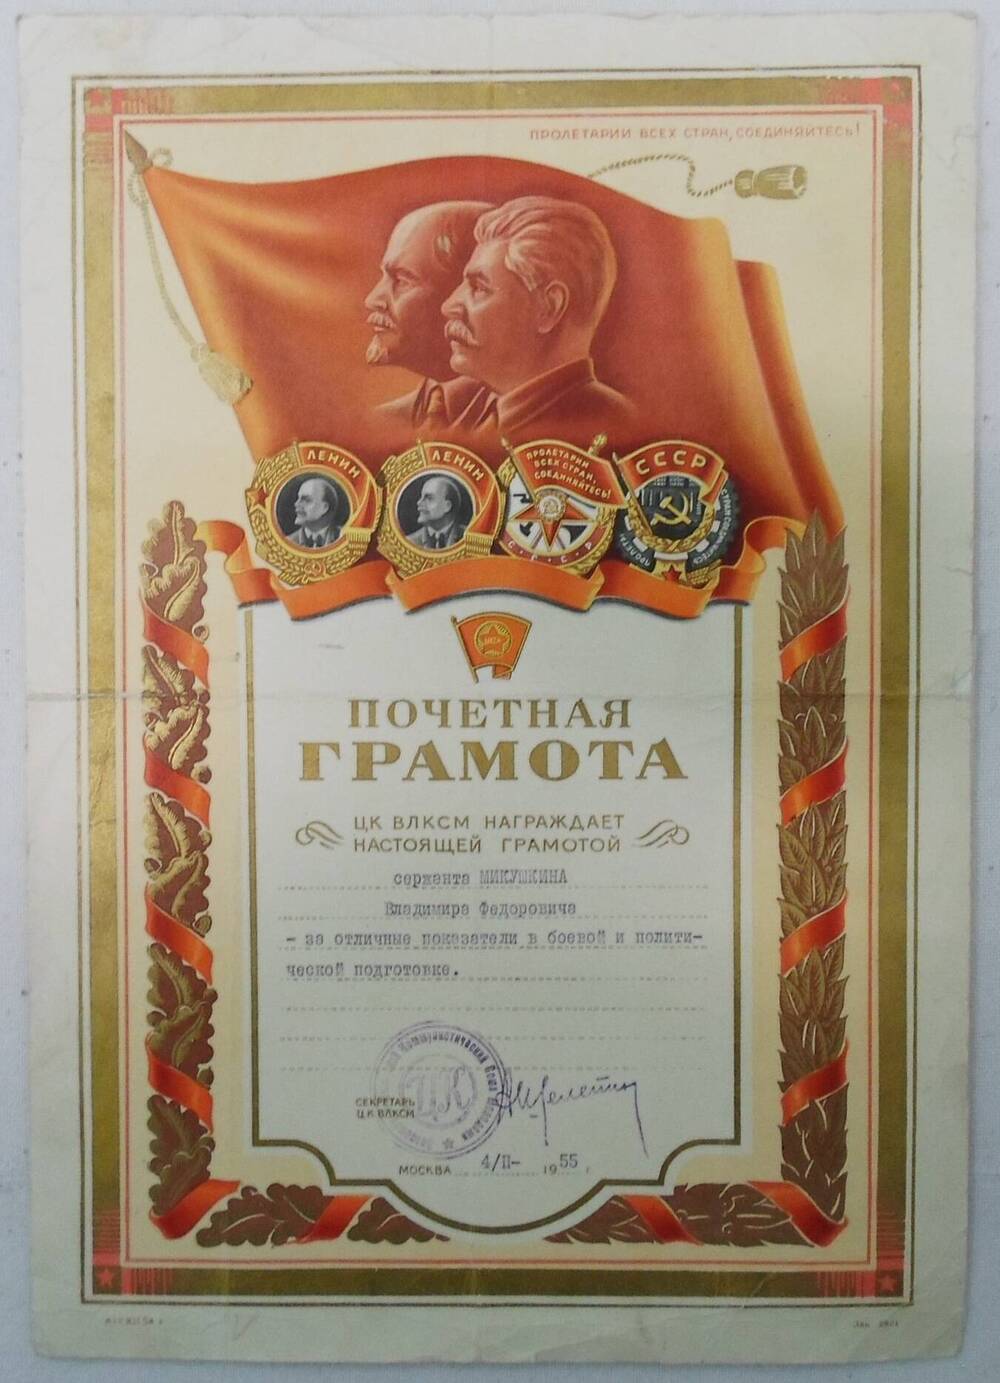 Почетная грамота сержанта Микушкина Владимира Фёдоровича- за отличные показатели в боевой и политической подготовке.